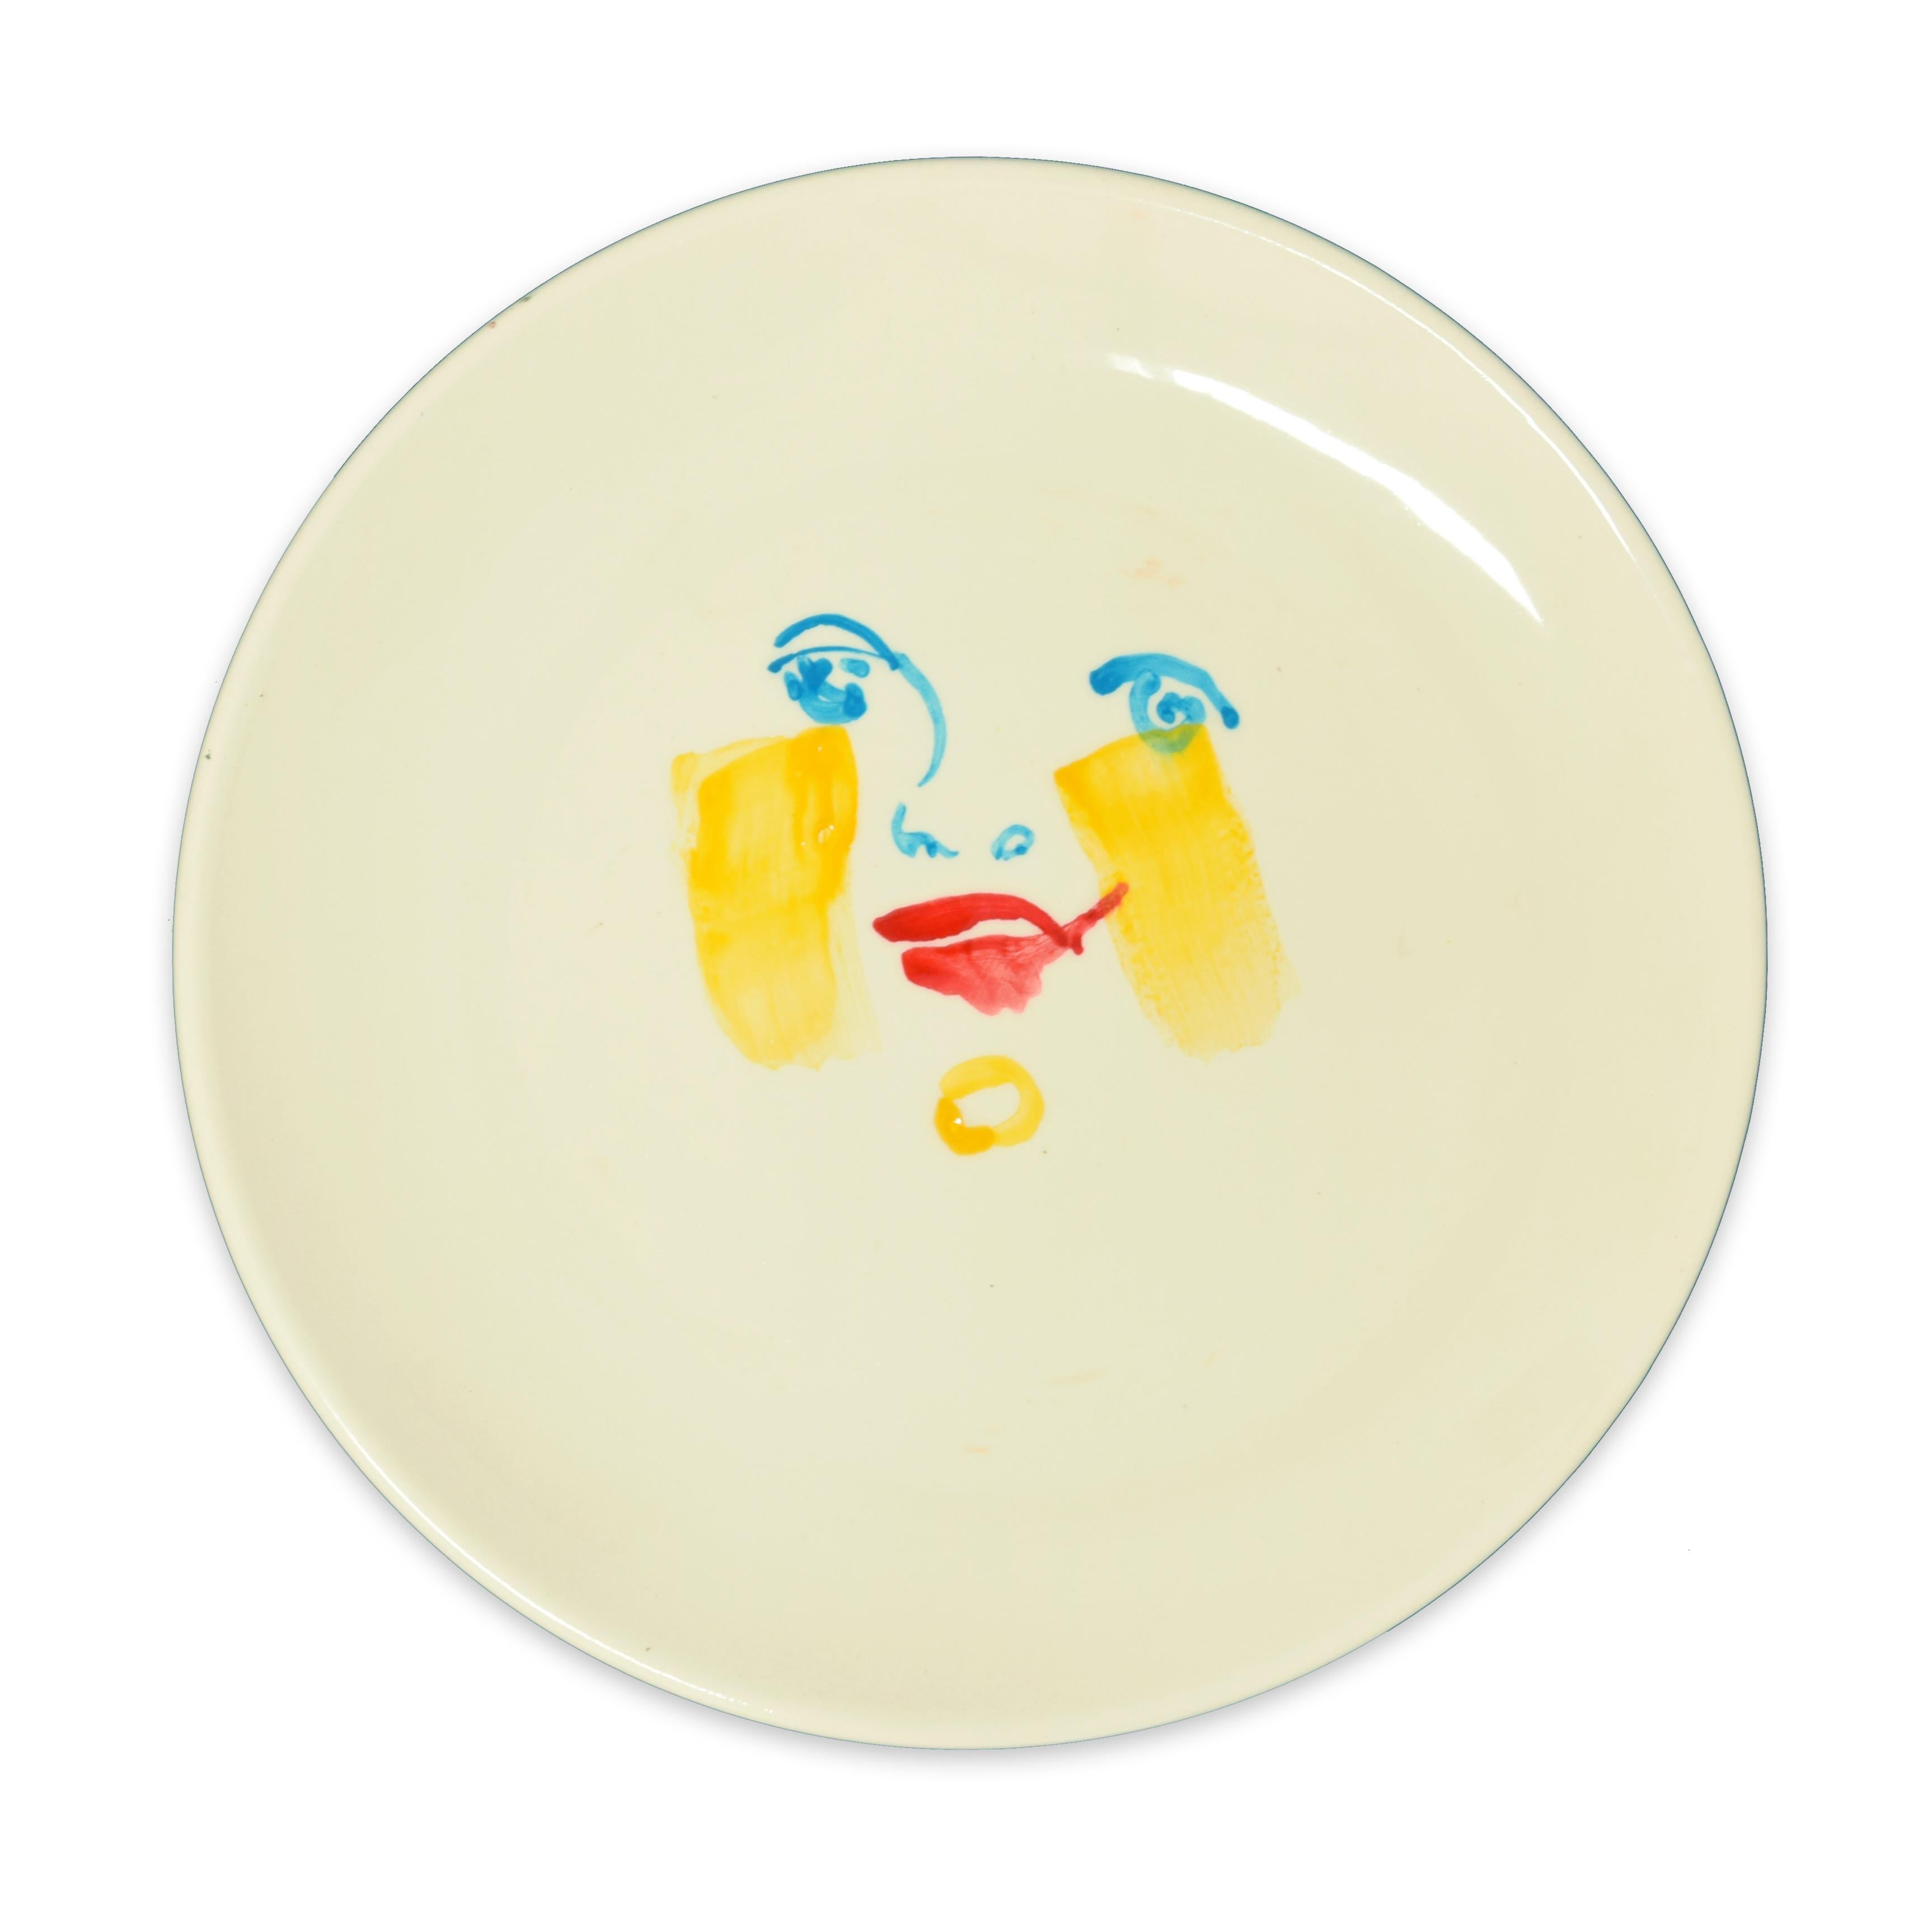 Yellow Brush - Hand-made Flat Ceramic Dish by A. Kurakina - 2019 - Art by Anastasia Kurakina